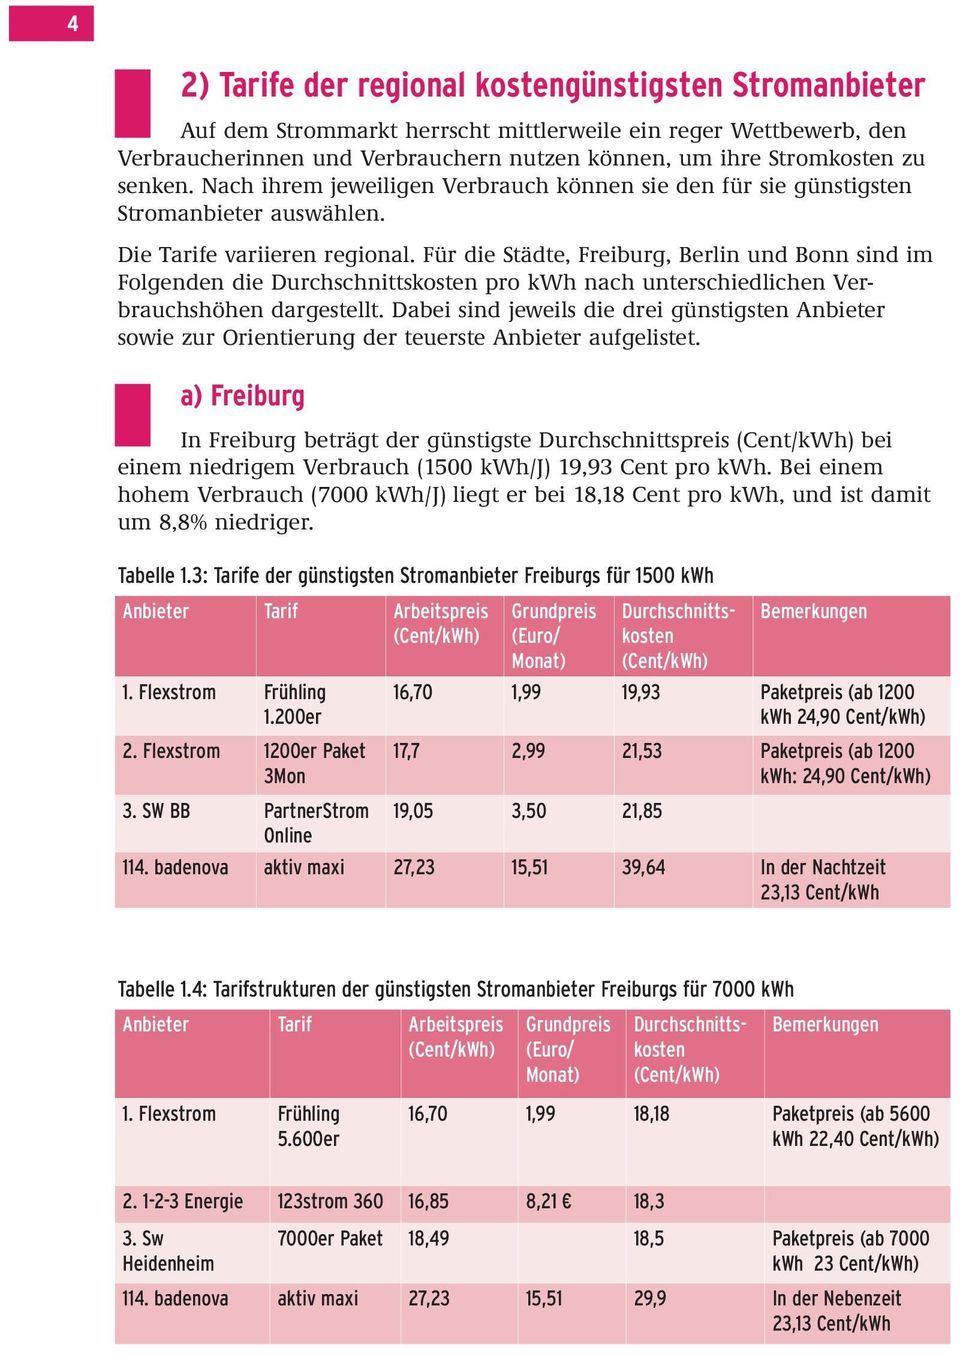 Für die Städte, Freiburg, Berlin und Bonn sind im Folgenden die pro kwh nach unterschiedlichen Verbrauchshöhen dargestellt.